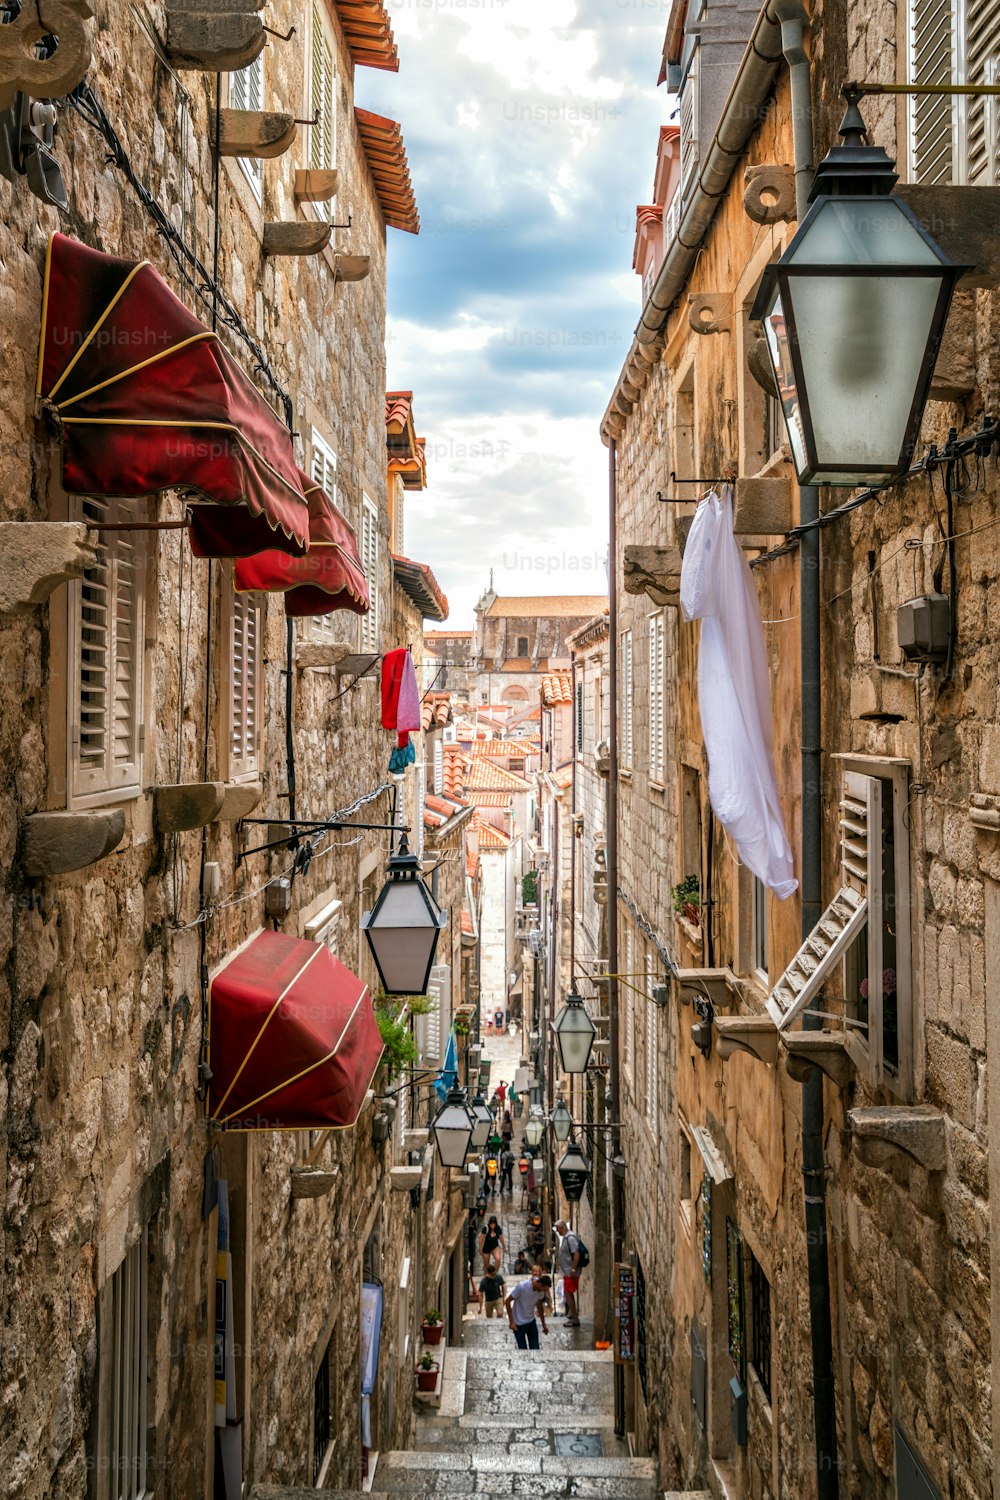 Famoso vicolo stretto della città vecchia di Dubrovnik in Croazia - destinazione di viaggio prominente della Croazia. La città vecchia di Dubrovnik è stata dichiarata Patrimonio dell'Umanità dall'UNESCO nel 1979.